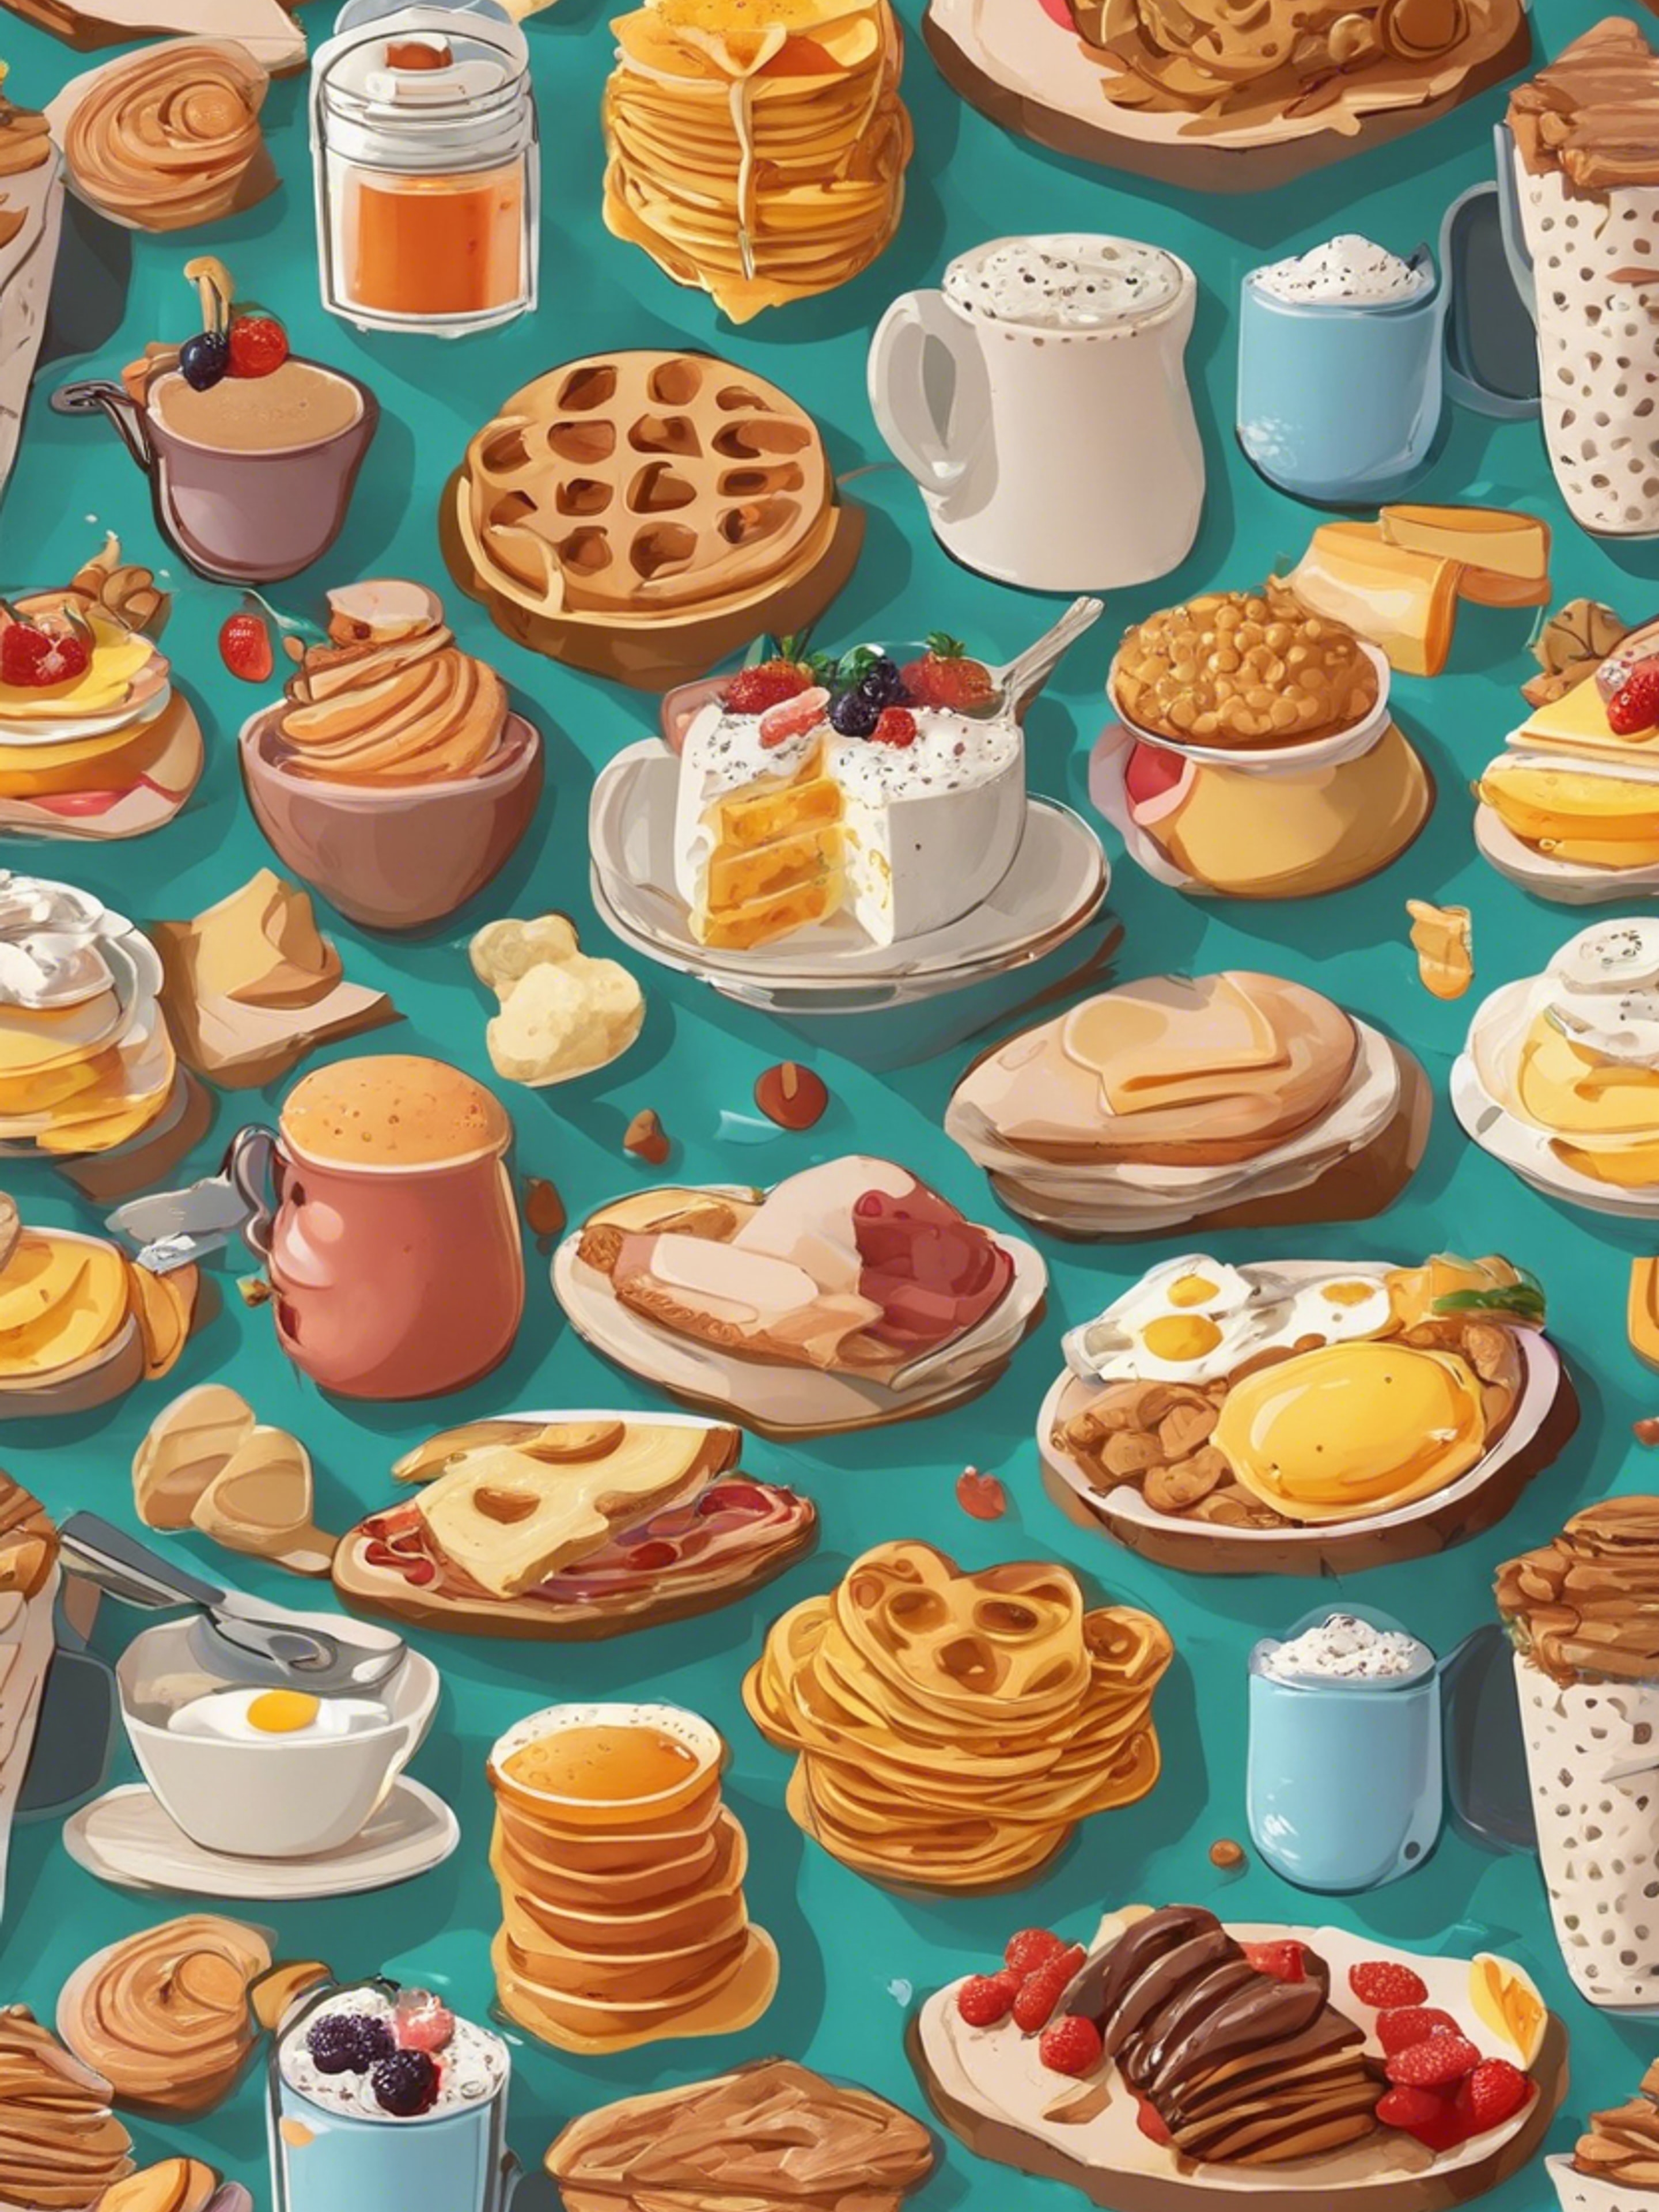 Cartoonish breakfast food items in an appealing, kid-friendly pattern. Taustakuva[fa493d8b255444e69f8d]